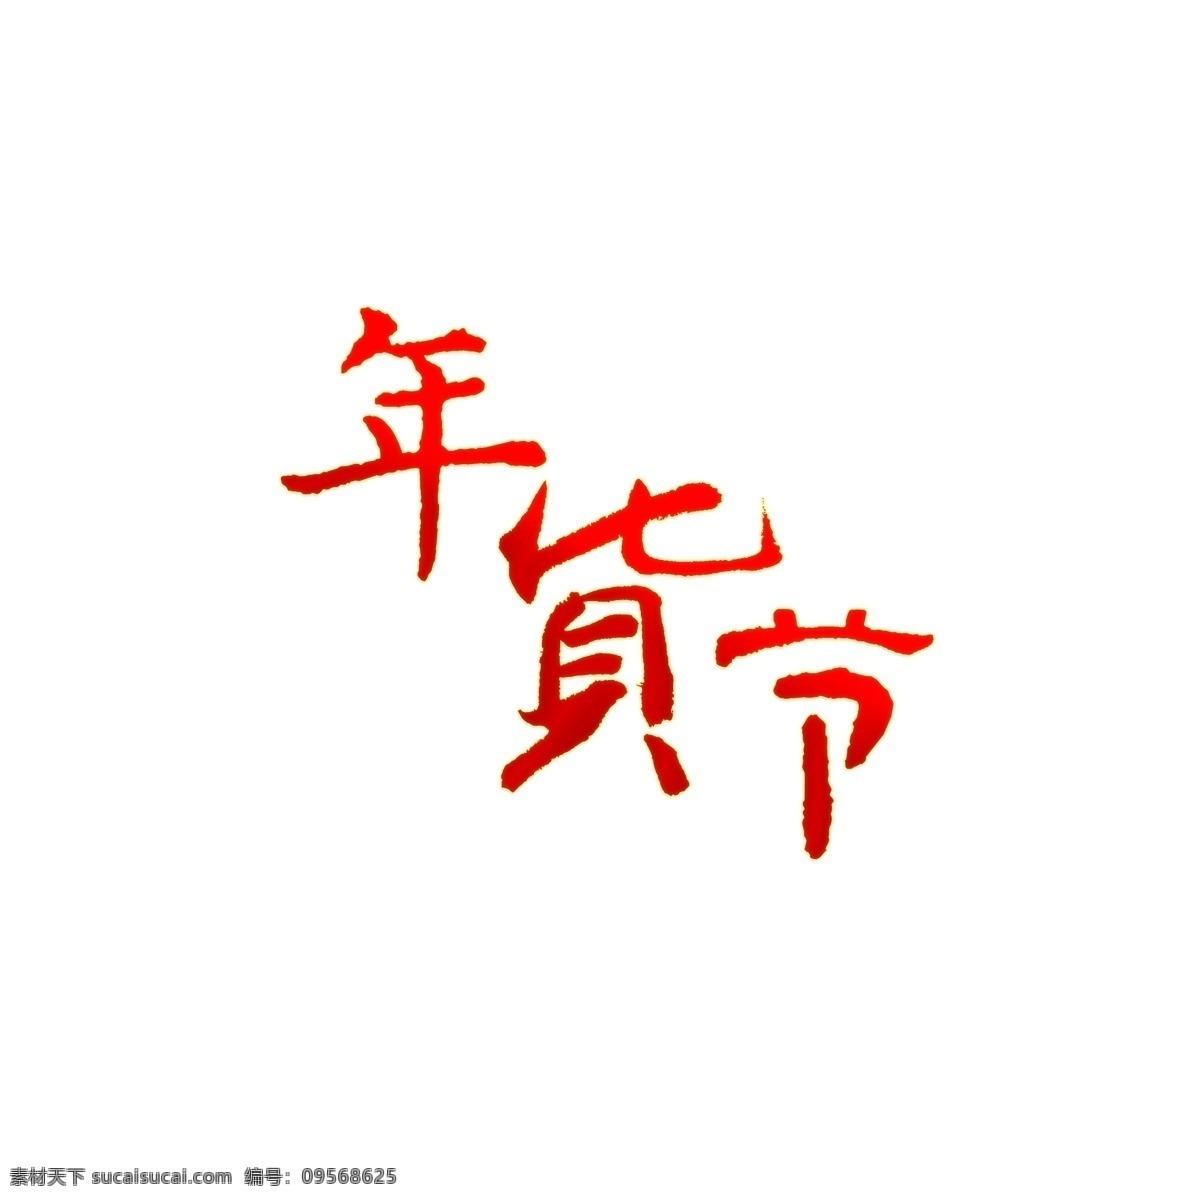 年货 节 渐变 红色 毛笔字 年货节 中国风 新年 电商 促销 天猫 中国红 大气 书法字体 透明 背景